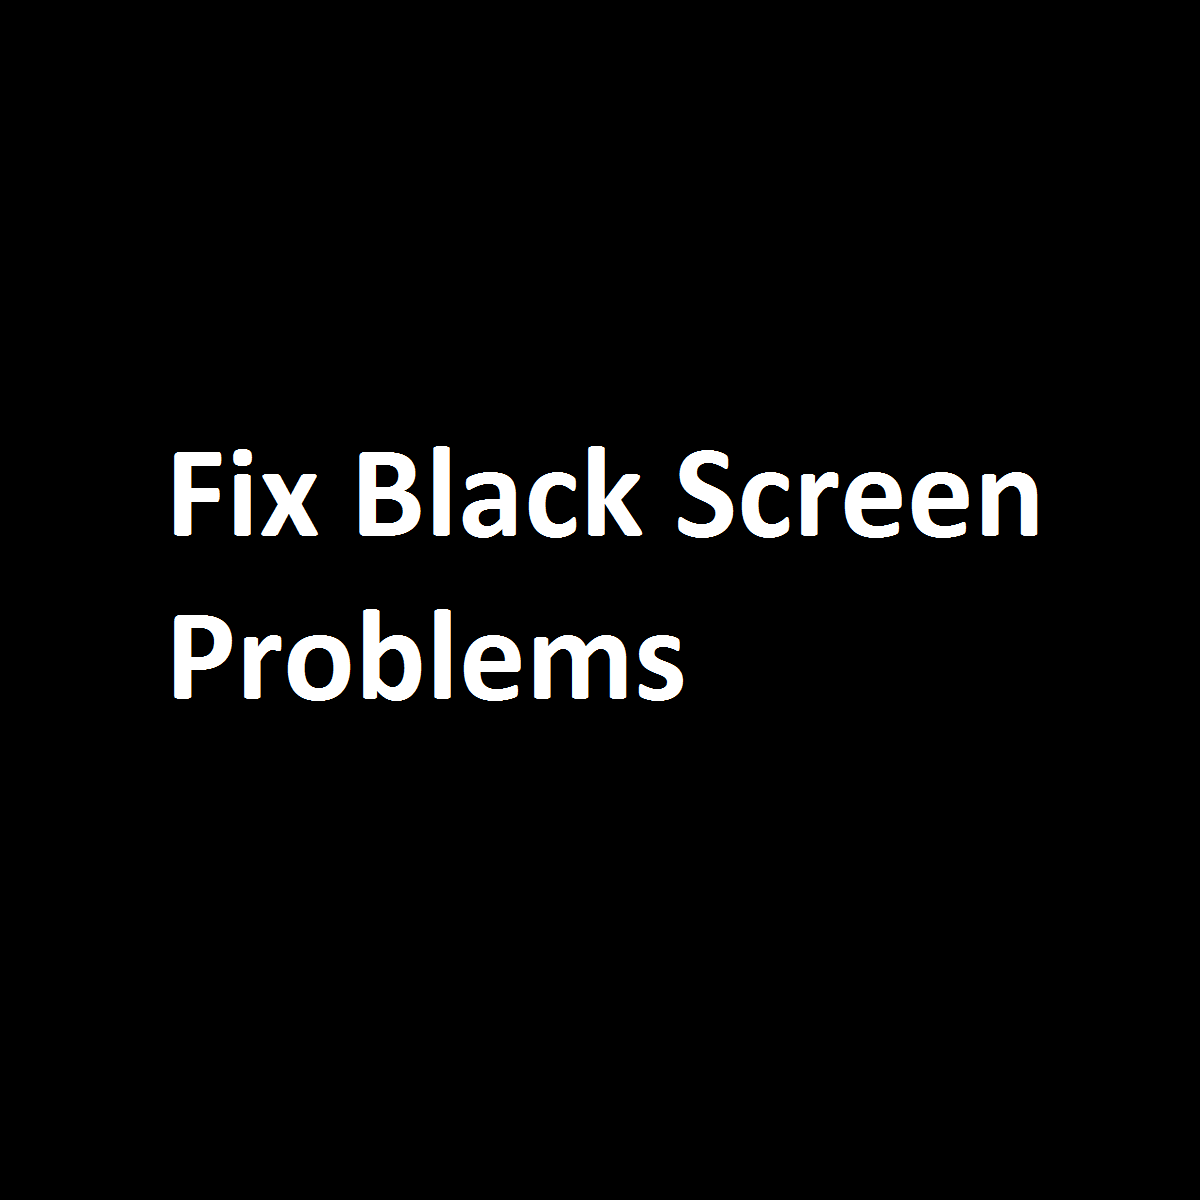 Fix black screen problems